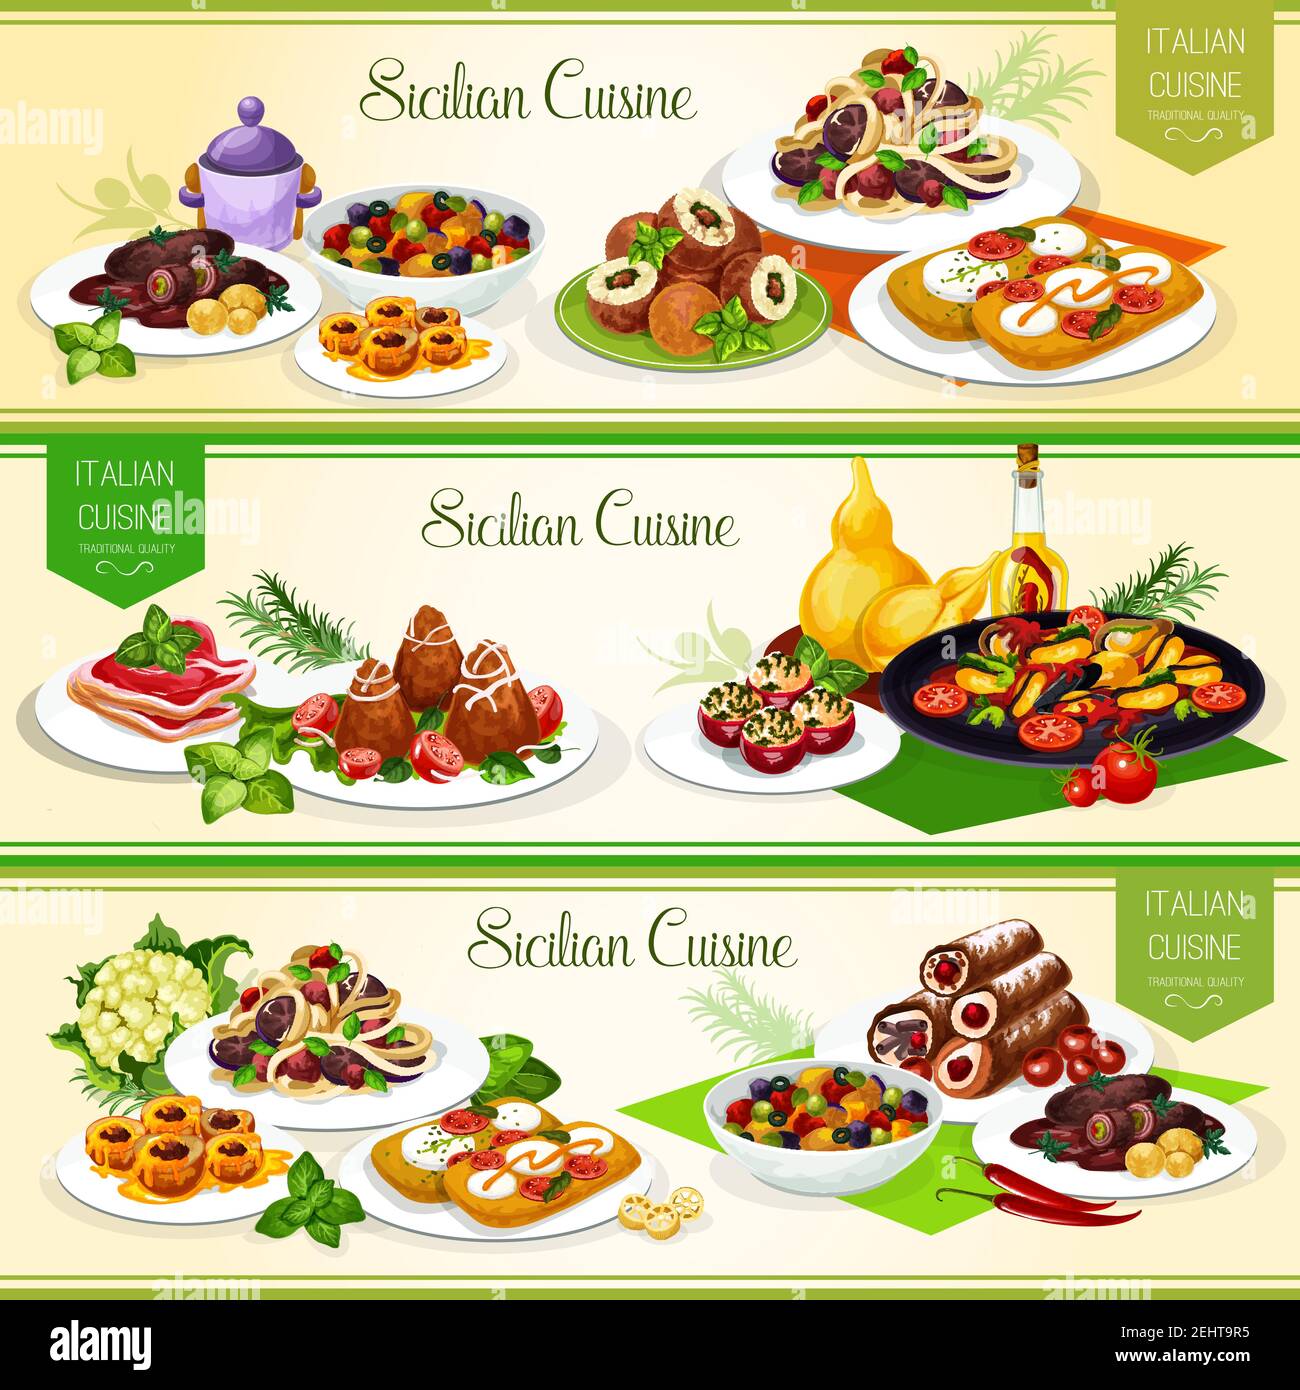 Sizilianische Küche Banner für italienische Restaurant-Menü-Design. Gemüsegarten, Tomatenkäse Bruschetta und Rinderbrötchen, gefüllte Tomaten, Obst Dessert und Stock Vektor